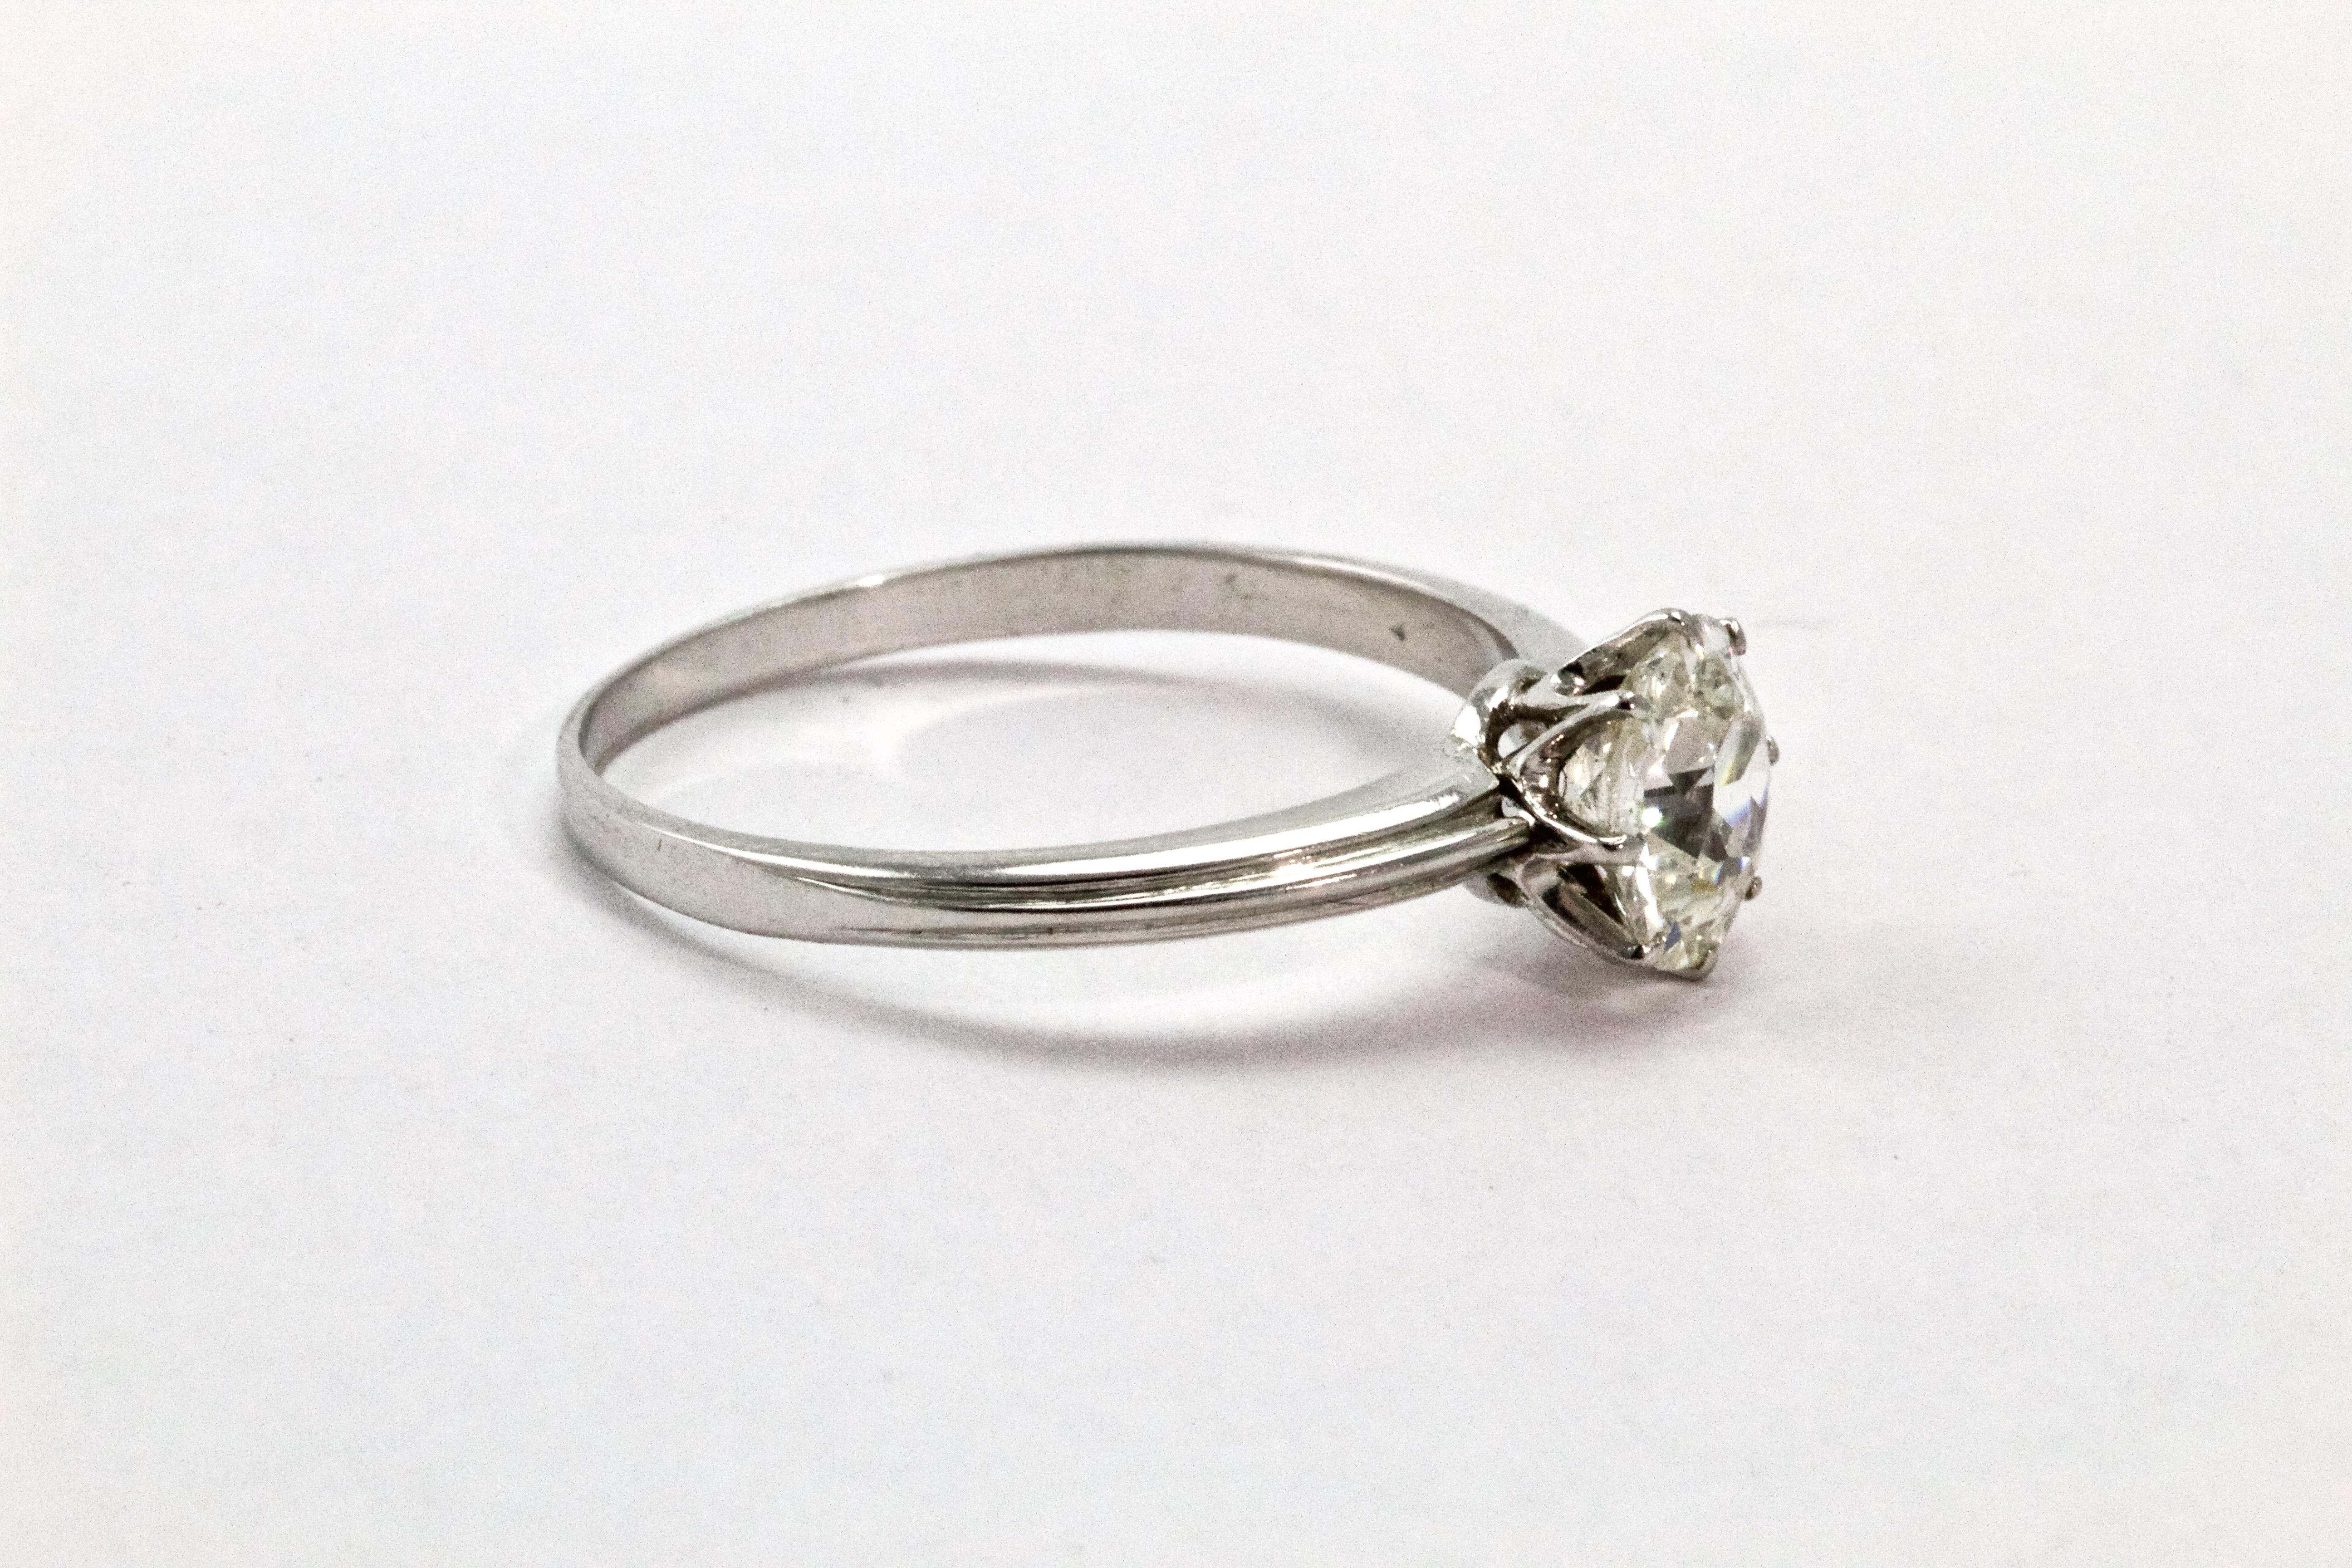 Cette bague solitaire en diamant, classique et étonnante, date des années 1920 et a été fabriquée de manière experte. La pierre est de 1,02 carats. Le diamant de taille européenne ancienne (H - VS2) est magnifiquement serti à l'intérieur d'un collet